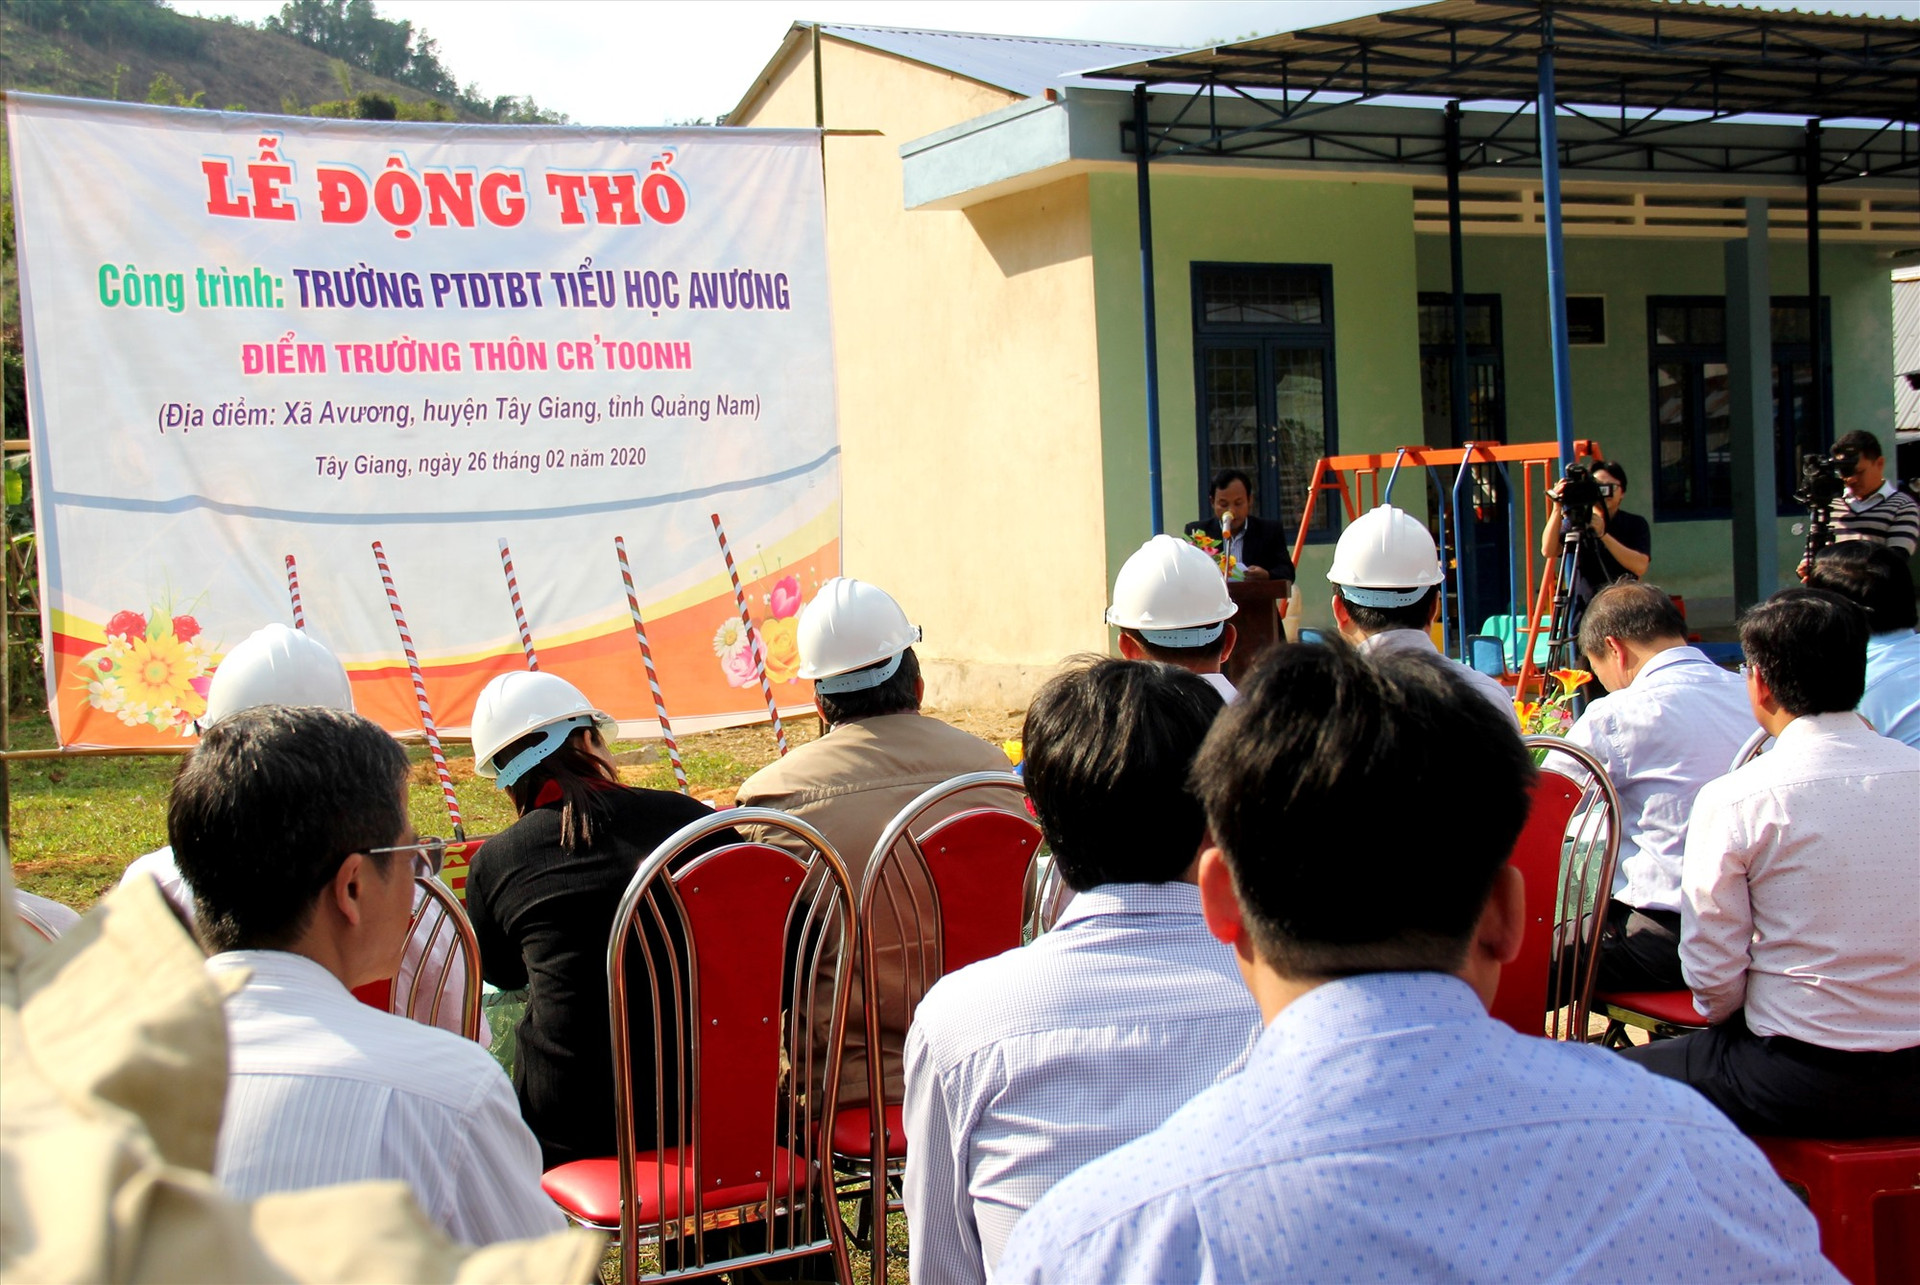 Các đại biểu tham dự lễ động thổ công trình điểm trường tiểu học thôn Cr'toonh. Ảnh: A.N